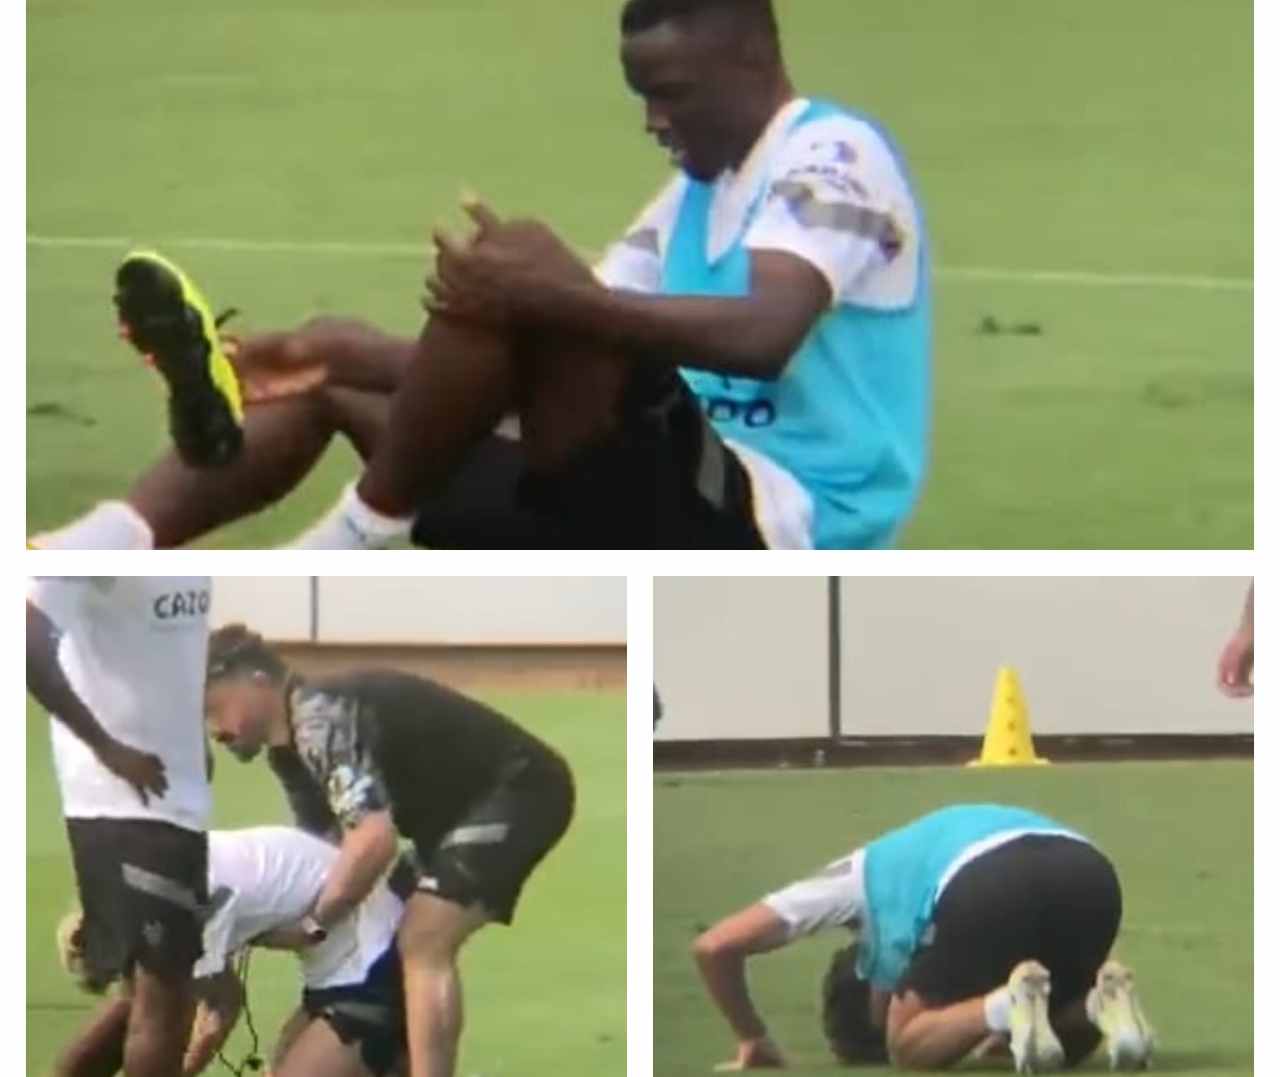 Valencia, cinque giocatori a terra: è polemica sugli allenamenti - VIDEO